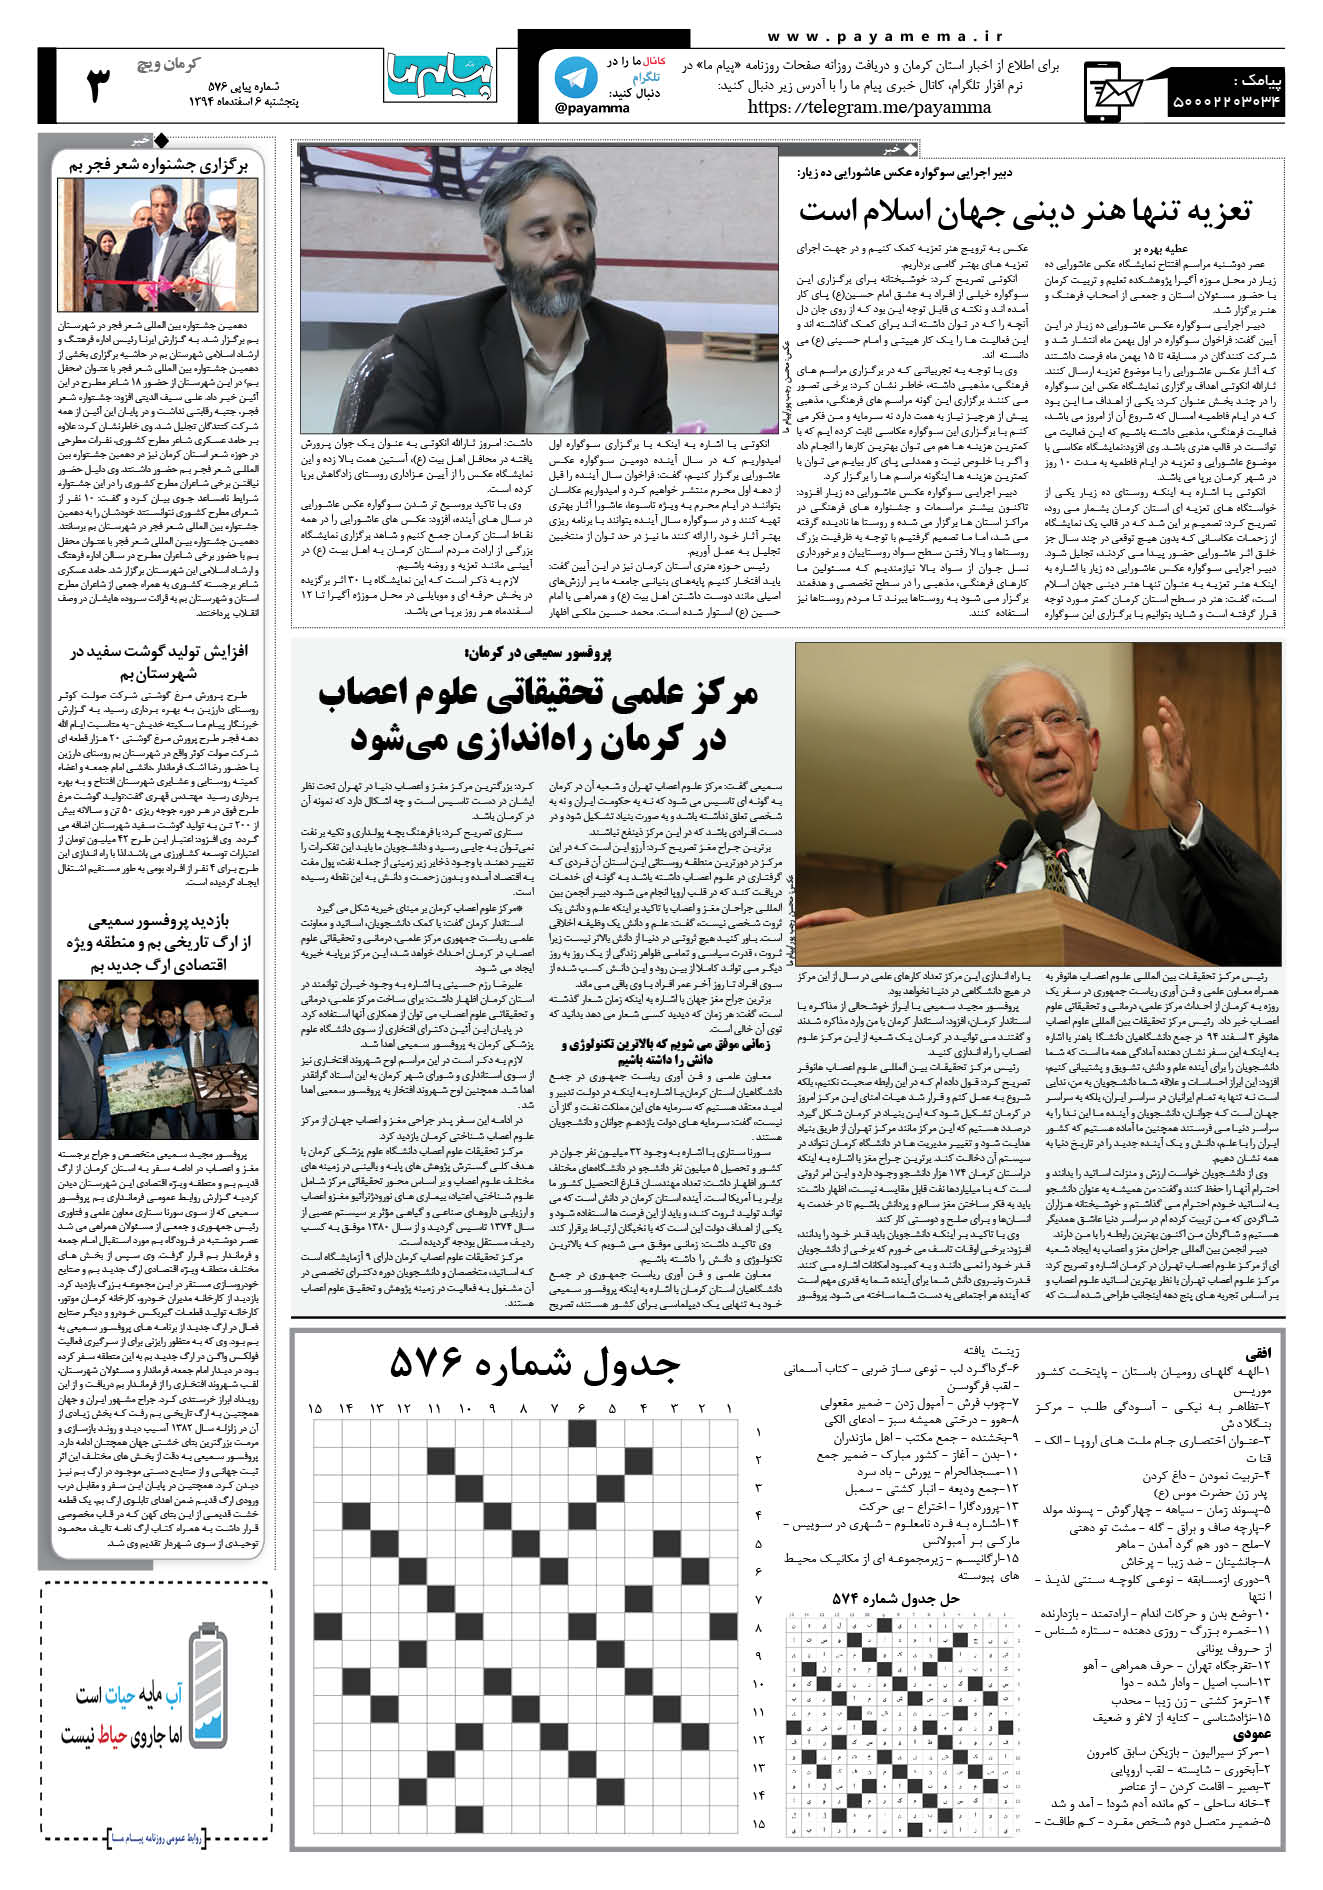 صفحه کرمان ویج شماره 576 روزنامه پیام ما